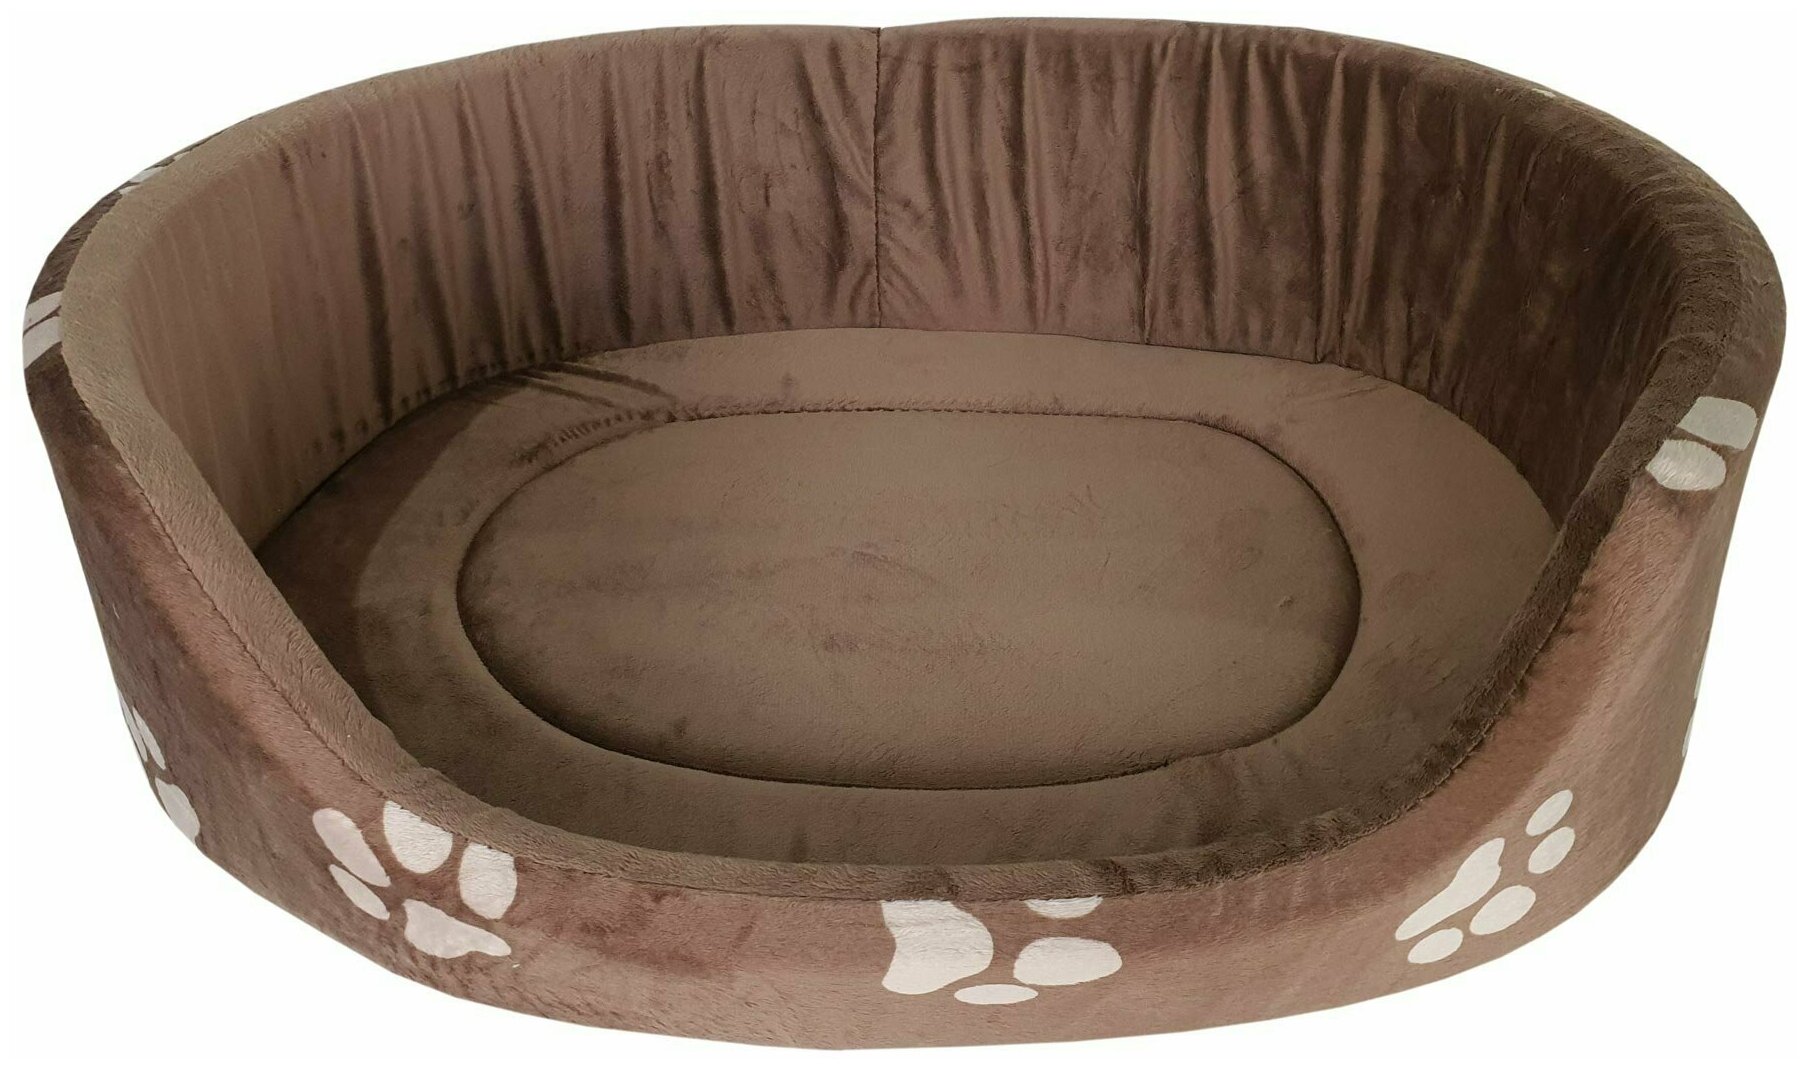 Лежанка напольная овальной формы с уплотненным дном Mava тапико №5 темно-коричневого цвета для собак средних и крупных пород, ткань мебельная, спанбонд, поролон, размеры 95х80х20 см, ФН-00068 - фотография № 1